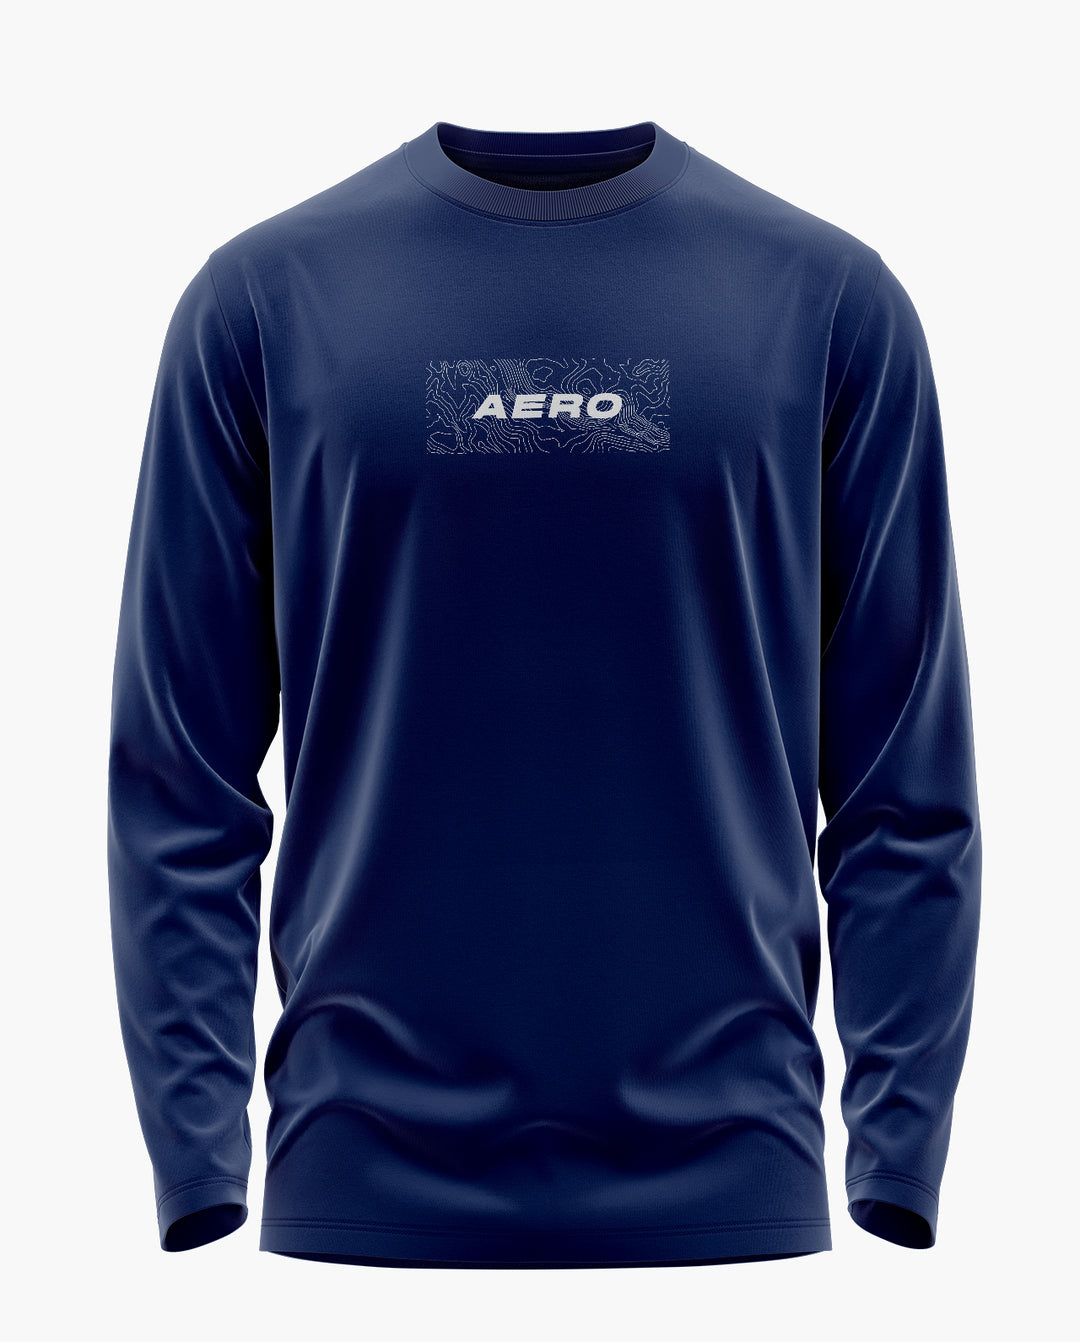 AERO TOPOGRAPHIC Full Sleeve T-Shirt